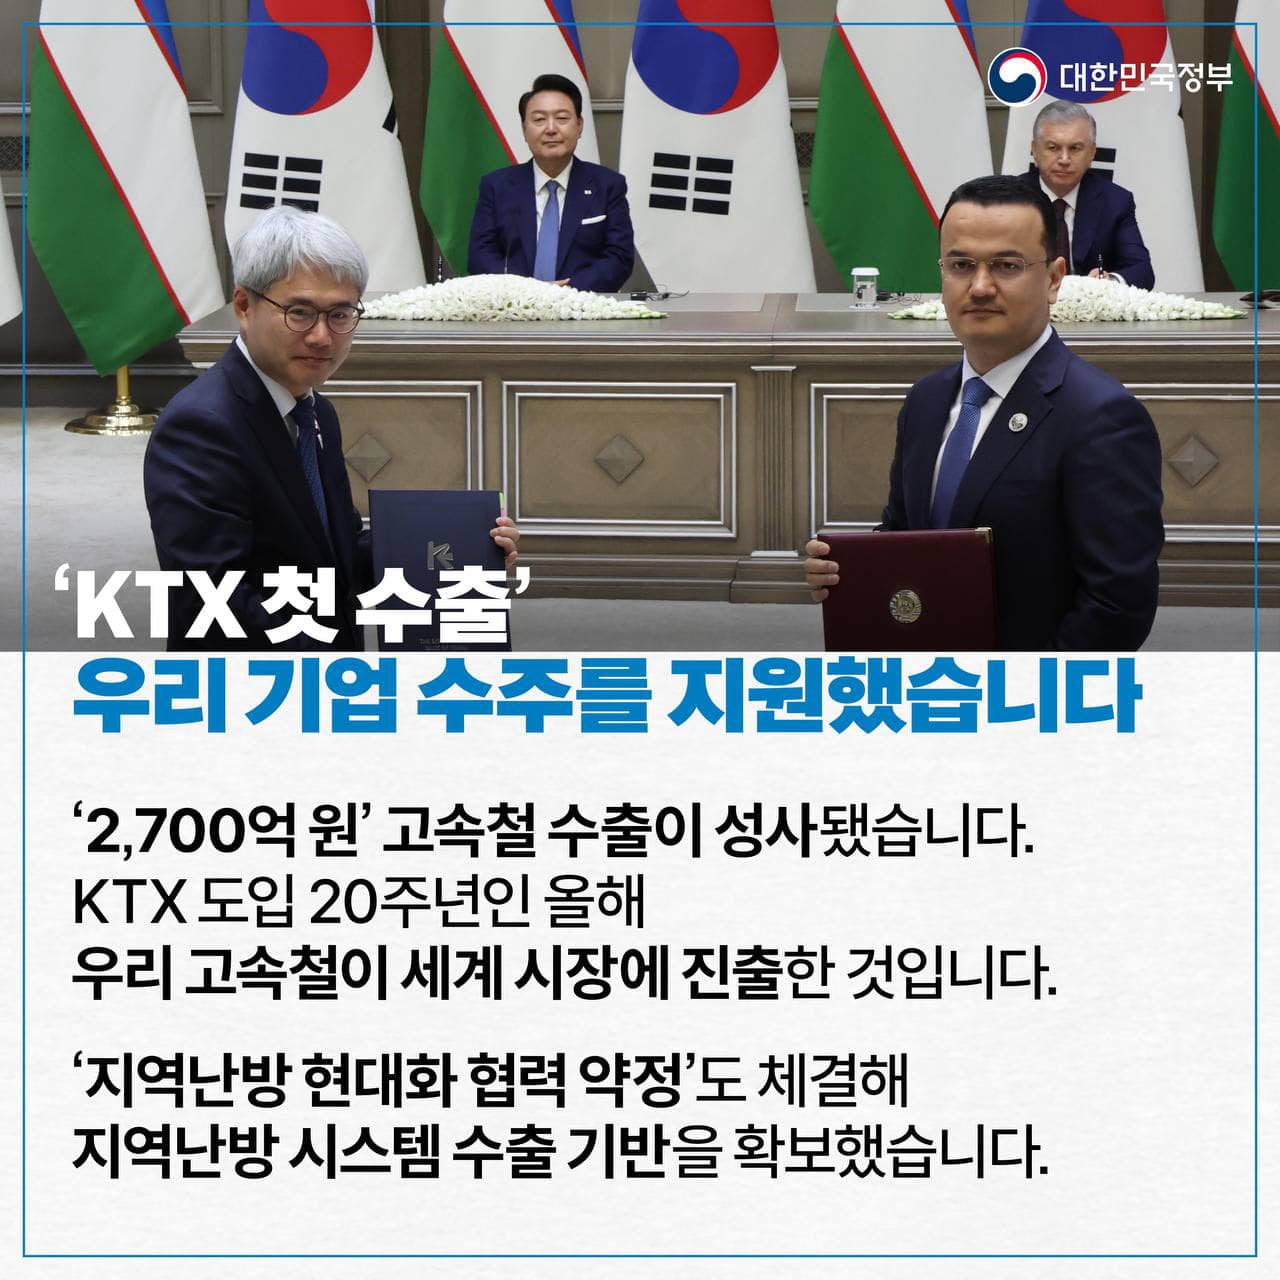 [한·우즈베키스탄 정상회담] KTX 첫 수출 성사, 핵심광물 파트너십 강화 등 협력 확대